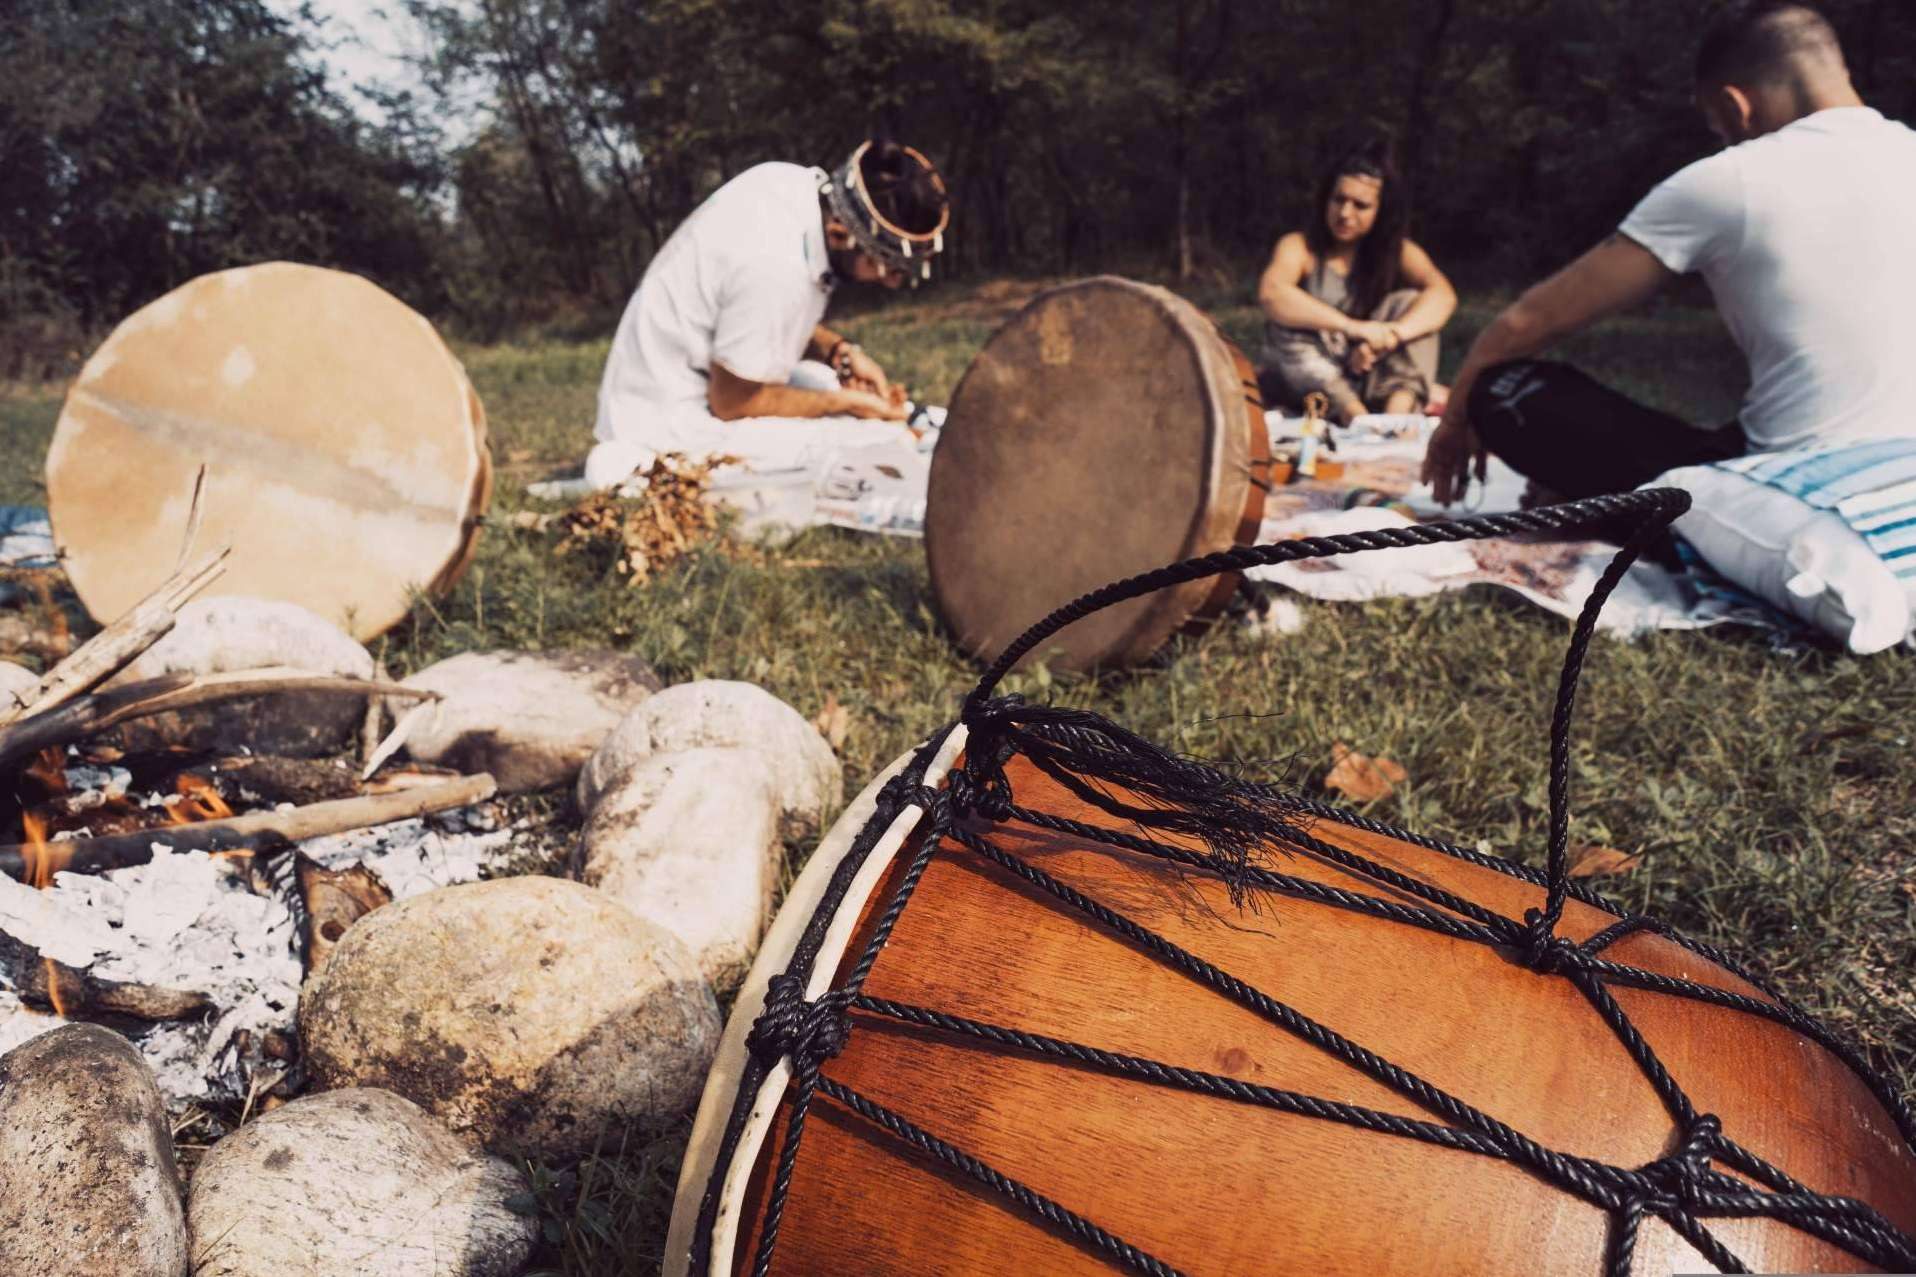  El tambor chamánico y la conexión espiritual a través de su sonido ancestral 